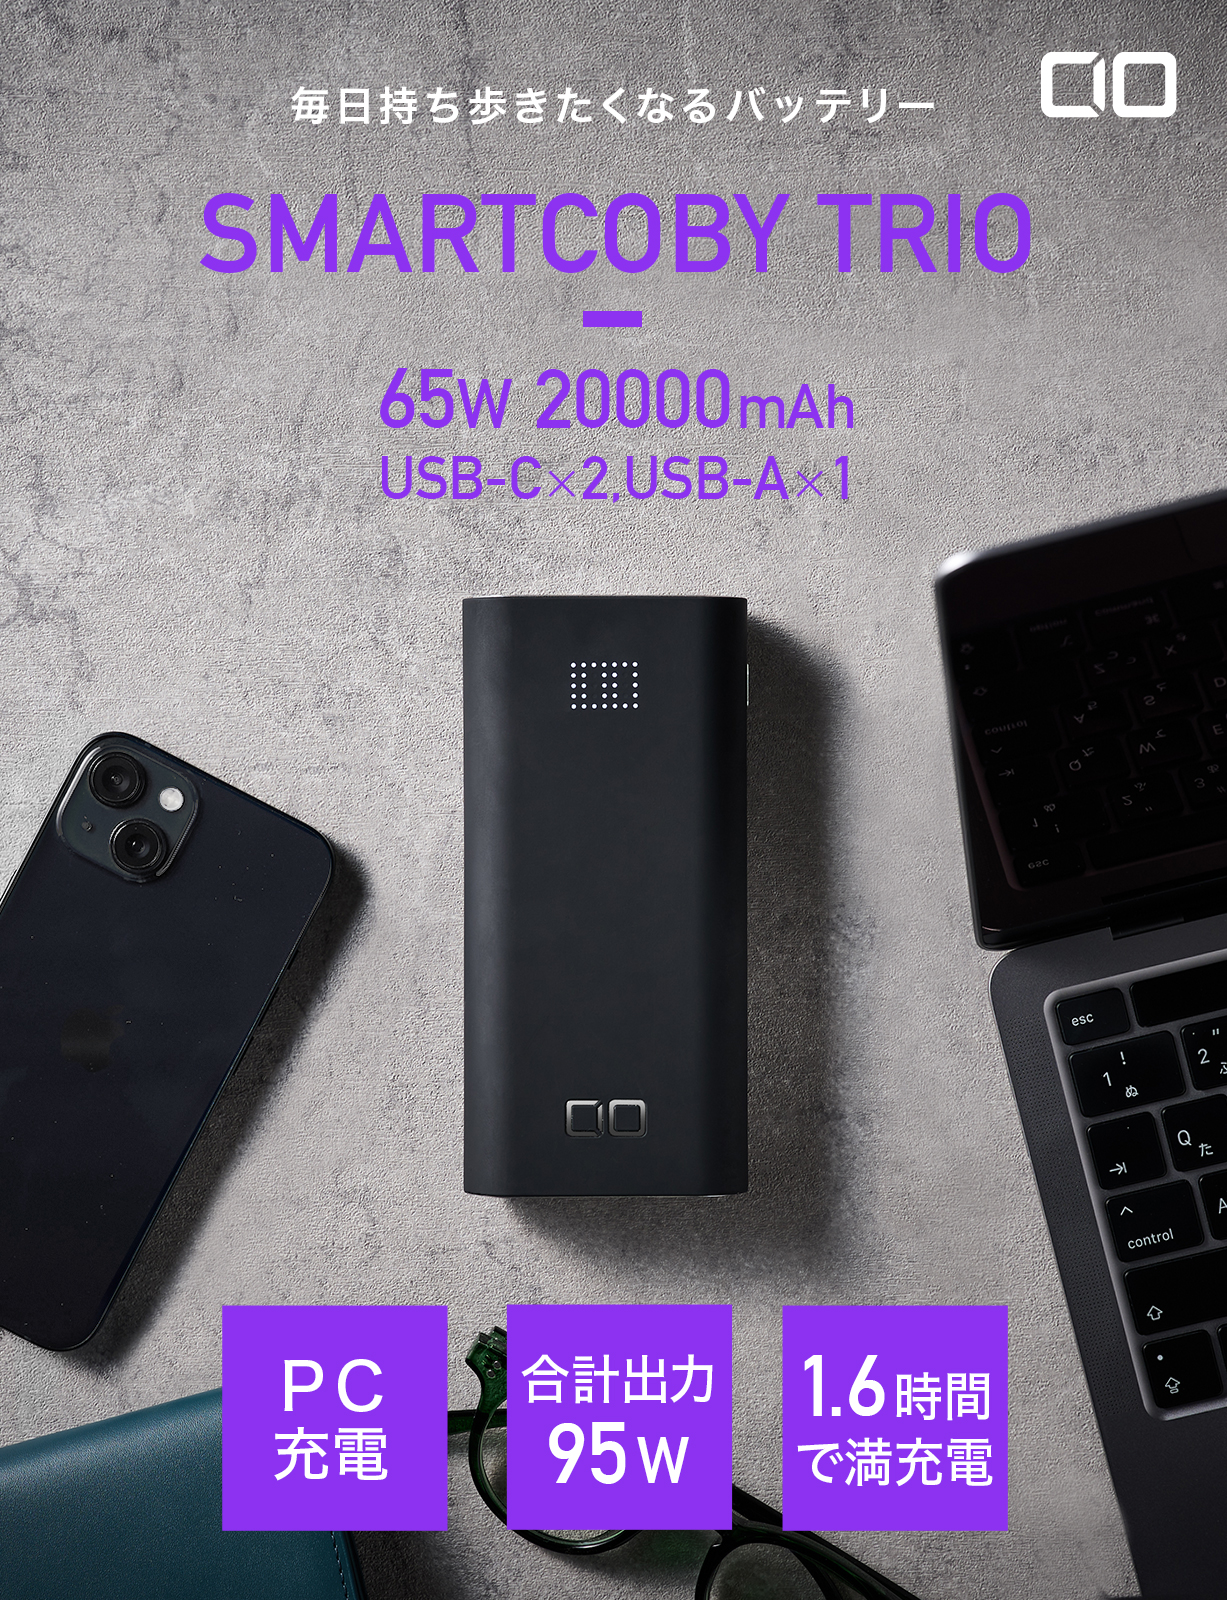 SMARTCOBY TRIO | 株式会社CIO（シーアイオー）公式HP 充電器